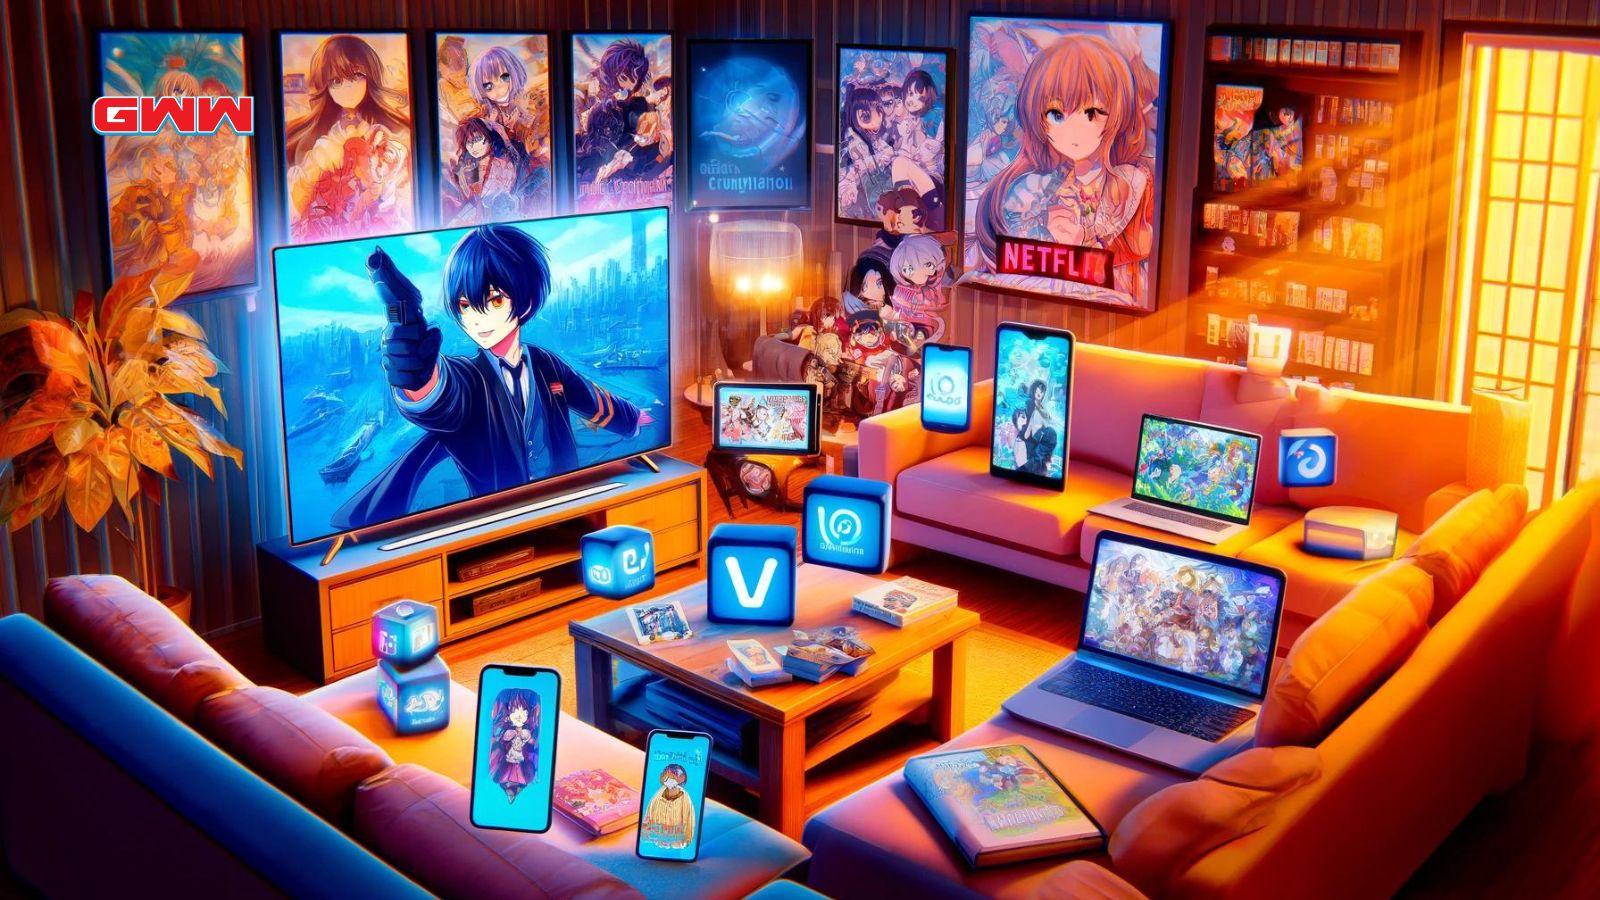 Una escena dinámica y vibrante que muestra varias plataformas donde se puede ver anime doblado en inglés